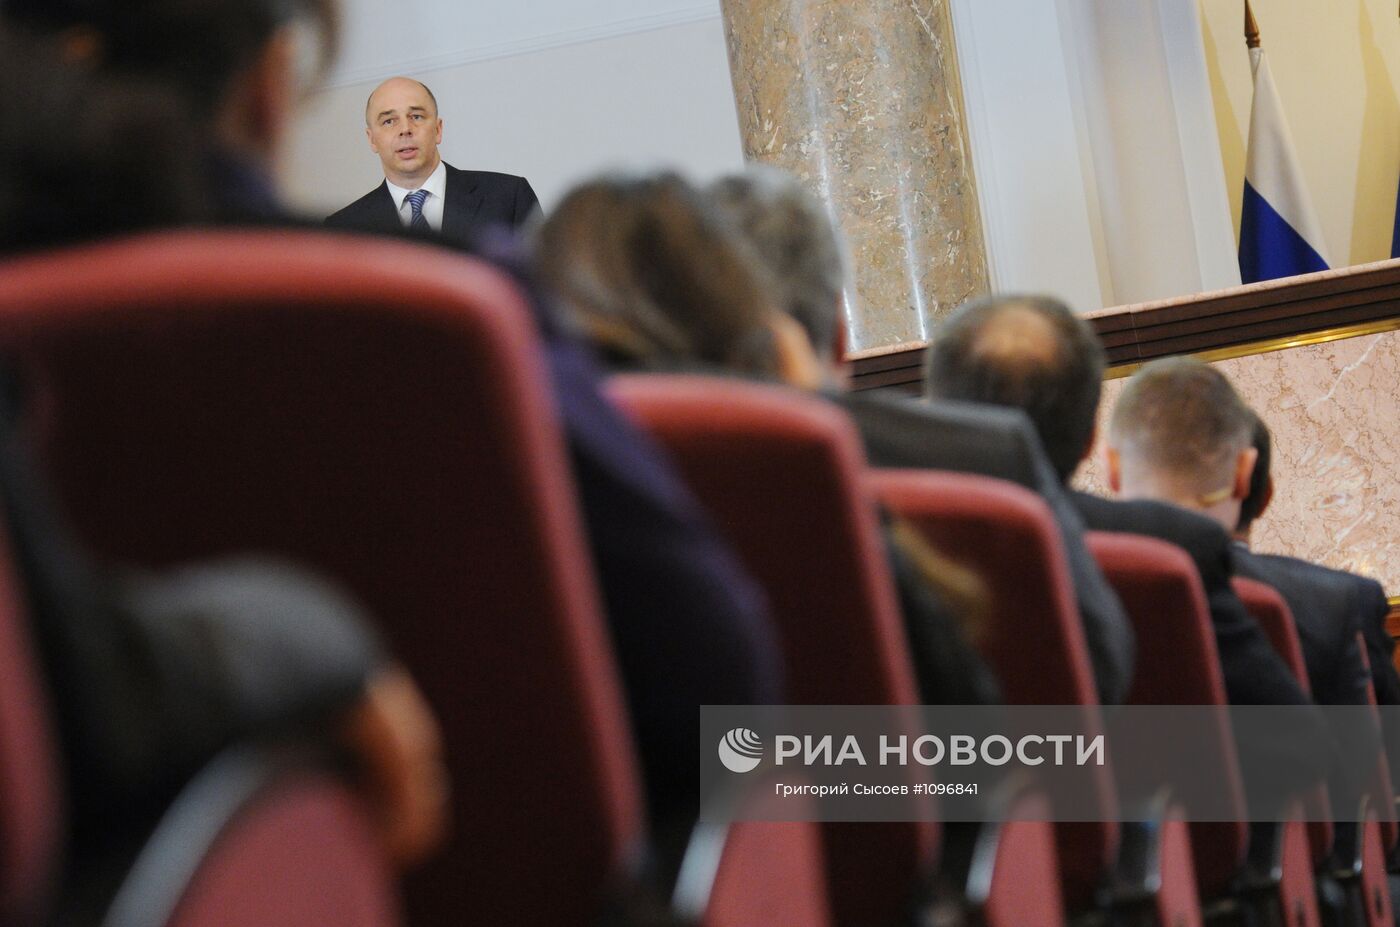 Заседание Коллегии Министерства финансов РФ